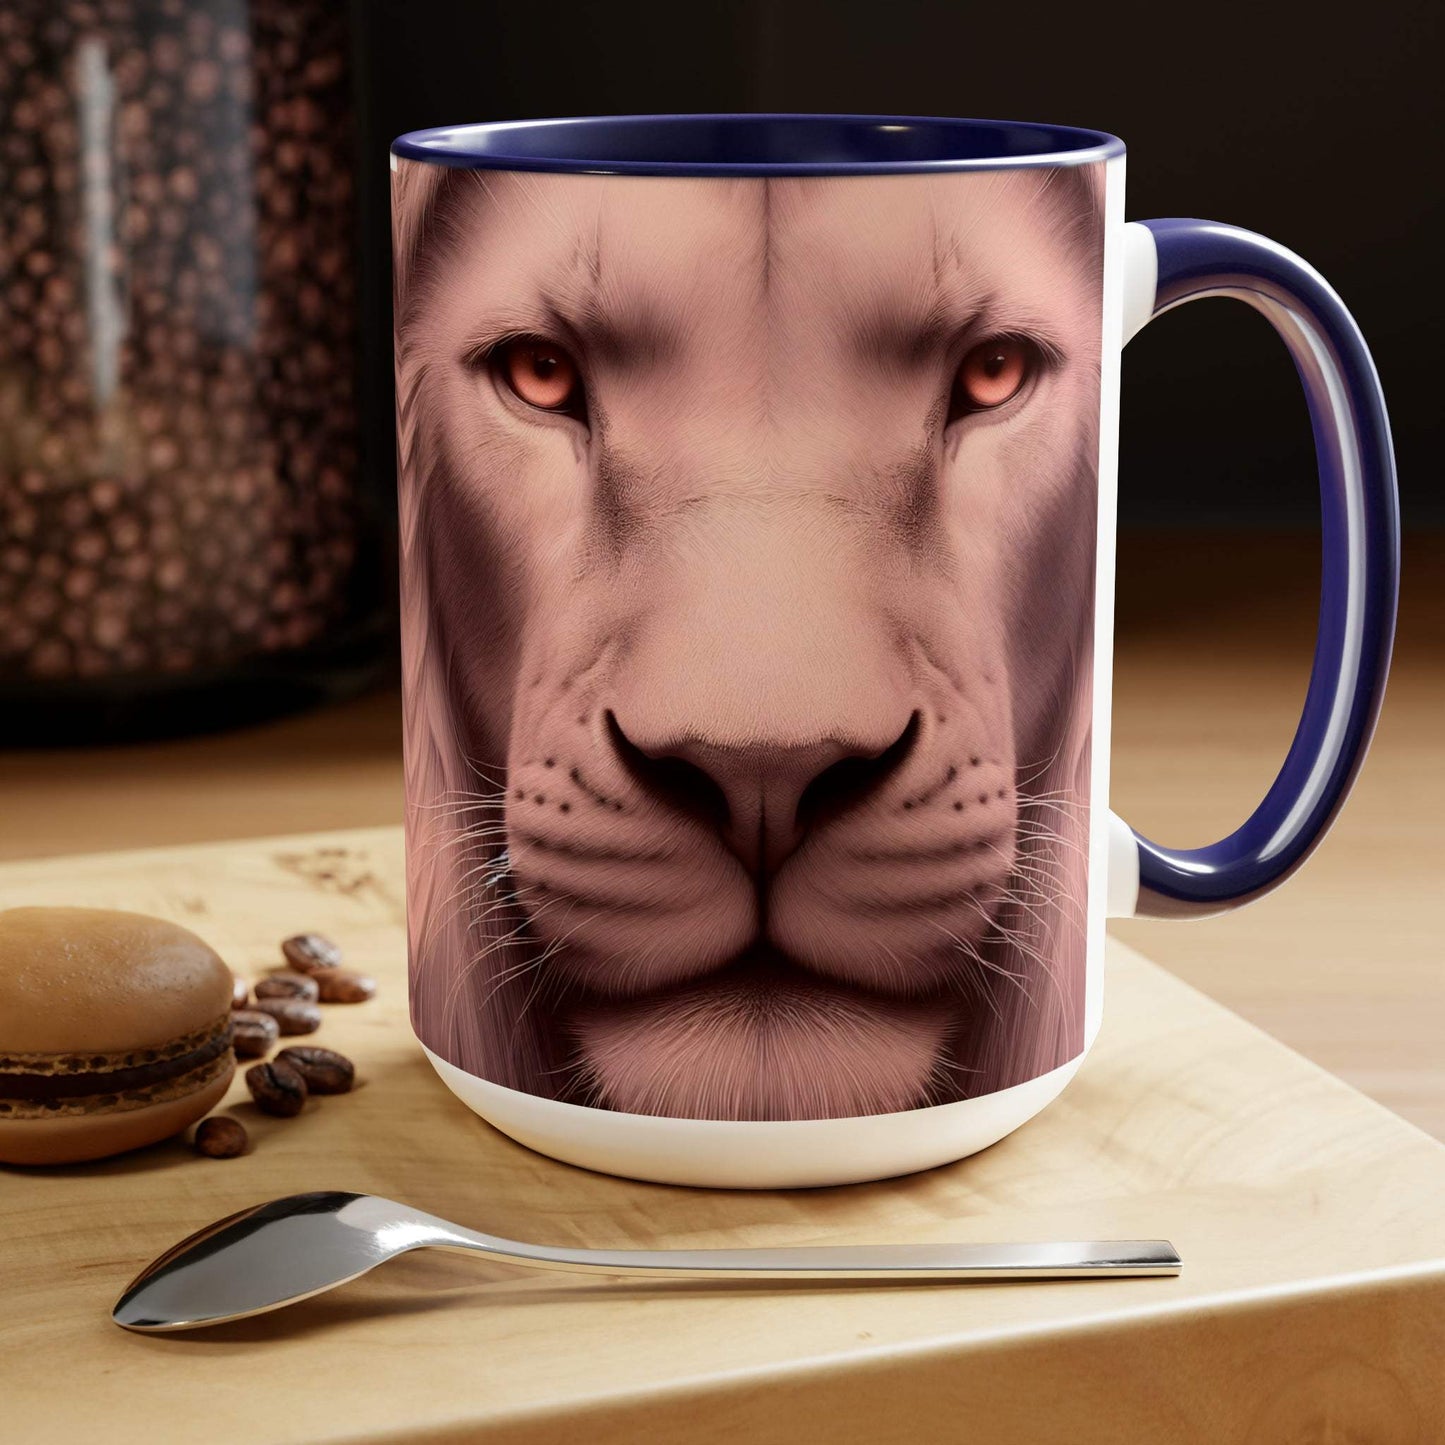 lion mug, lion coffee mug, animal coffee mug